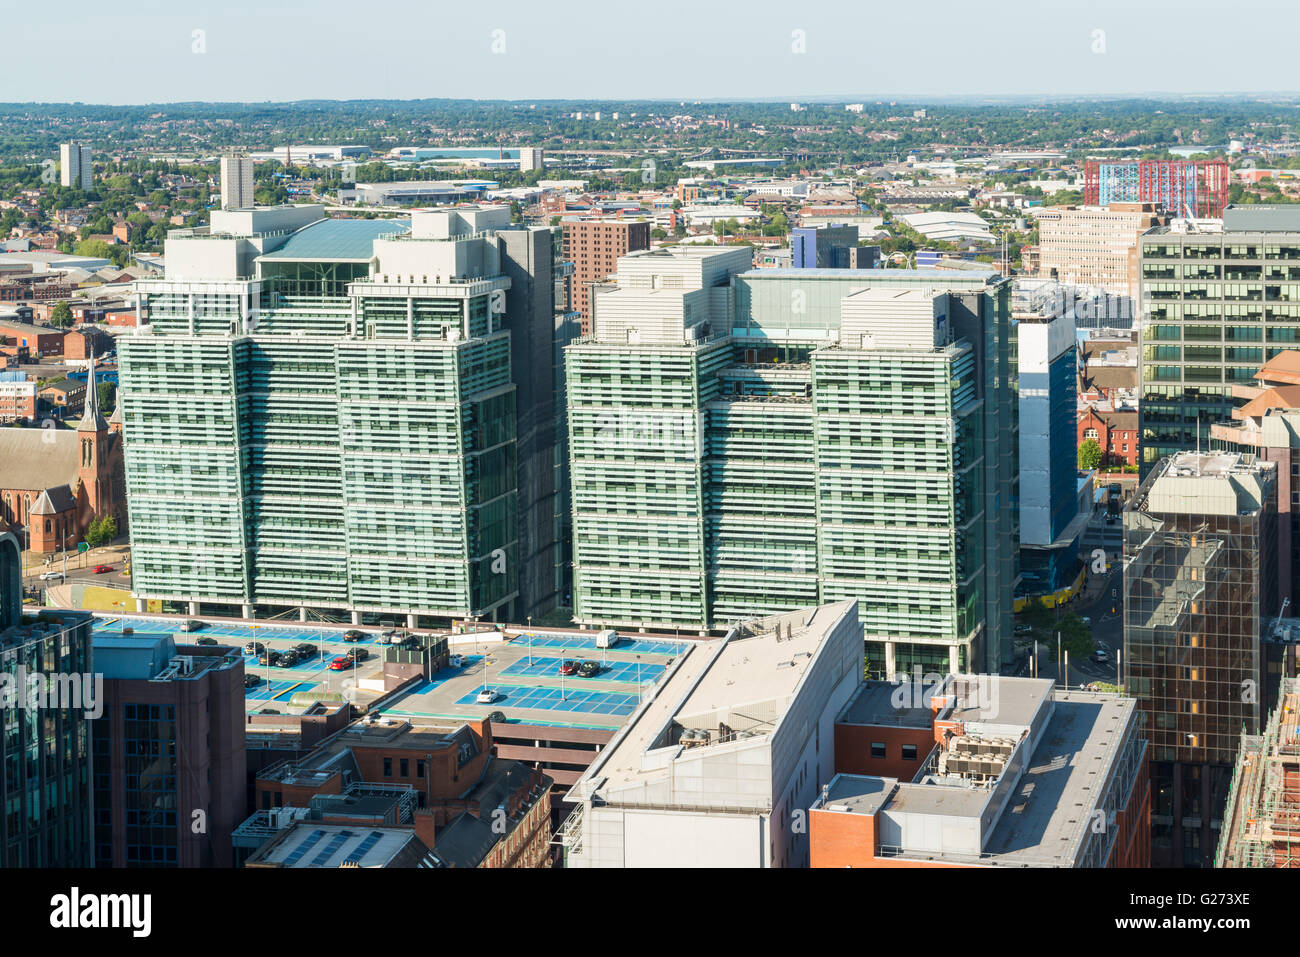 Photographie aérienne du centre-ville de Birmingham, en Angleterre. snowhill édifices Banque D'Images